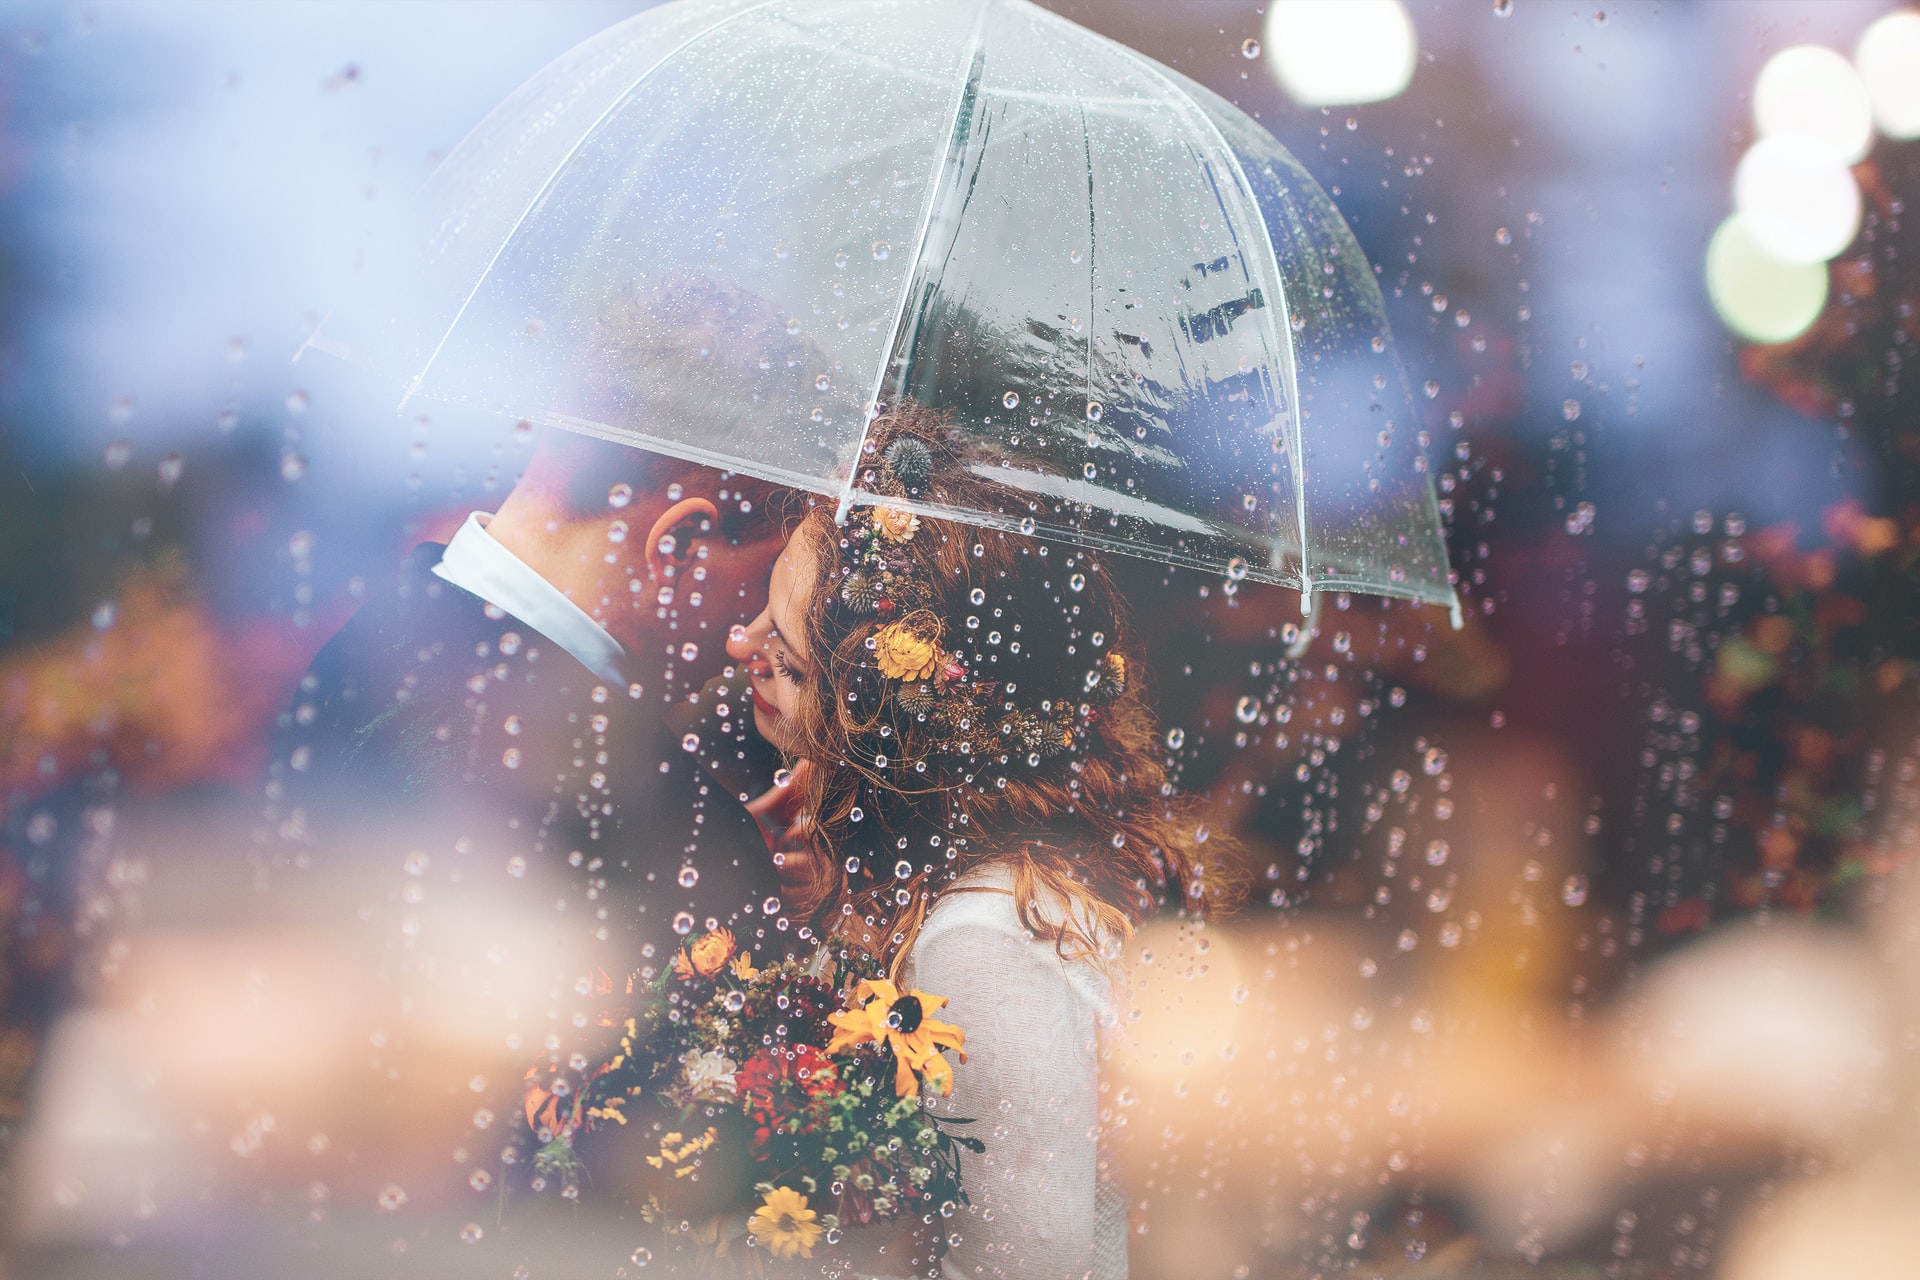 Couple under an umbrella